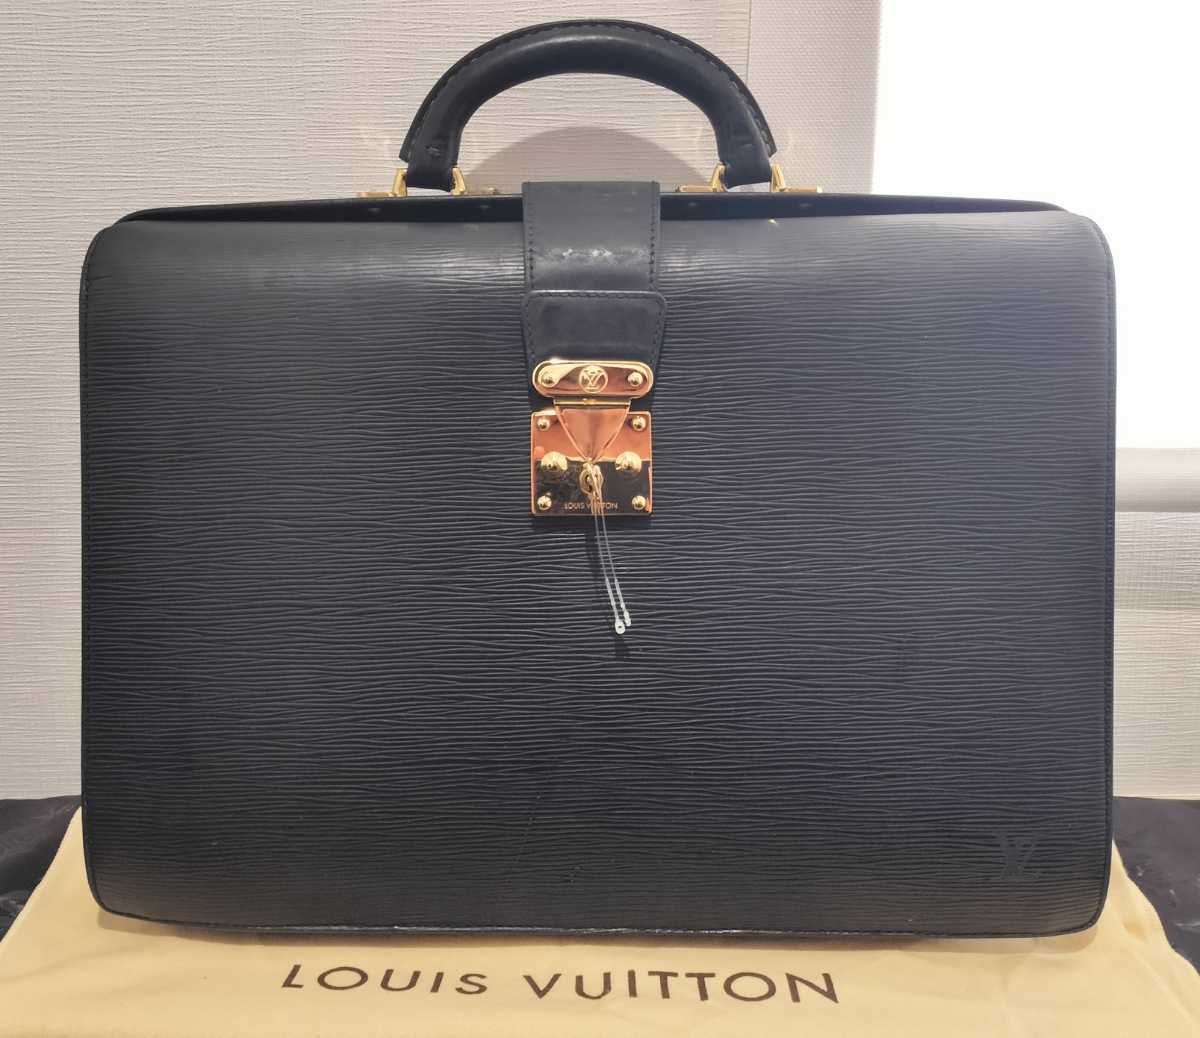 ★金具超綺麗★Louis Vuitton ヴィトン エピ 2層 ダレスバッグ ビジネスバッグ ブリーフケース 書類鞄★鍵付、フランス製★